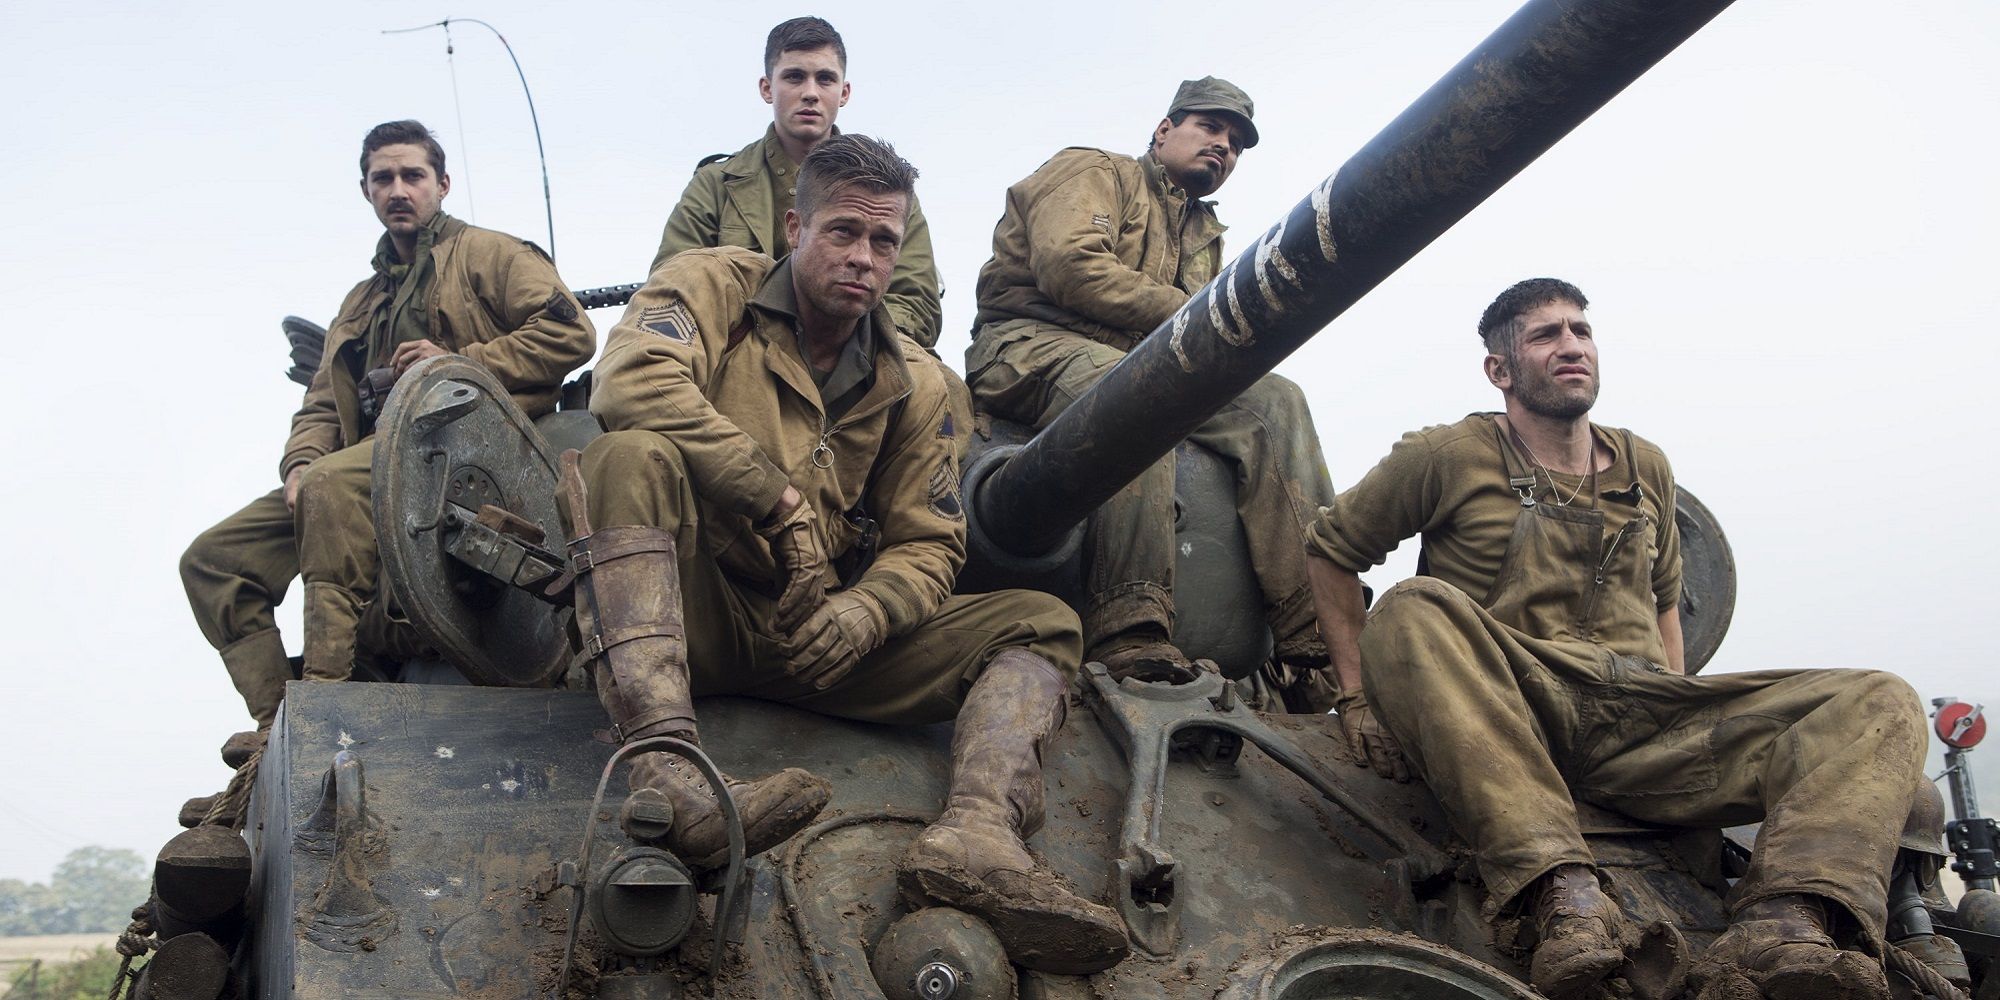 A tripulação do tanque (Brad Pitt, Shia LaBeouf, Jon Bernthal, Michael Pena, Logan Lerman) senta-se em um tanque em Fury